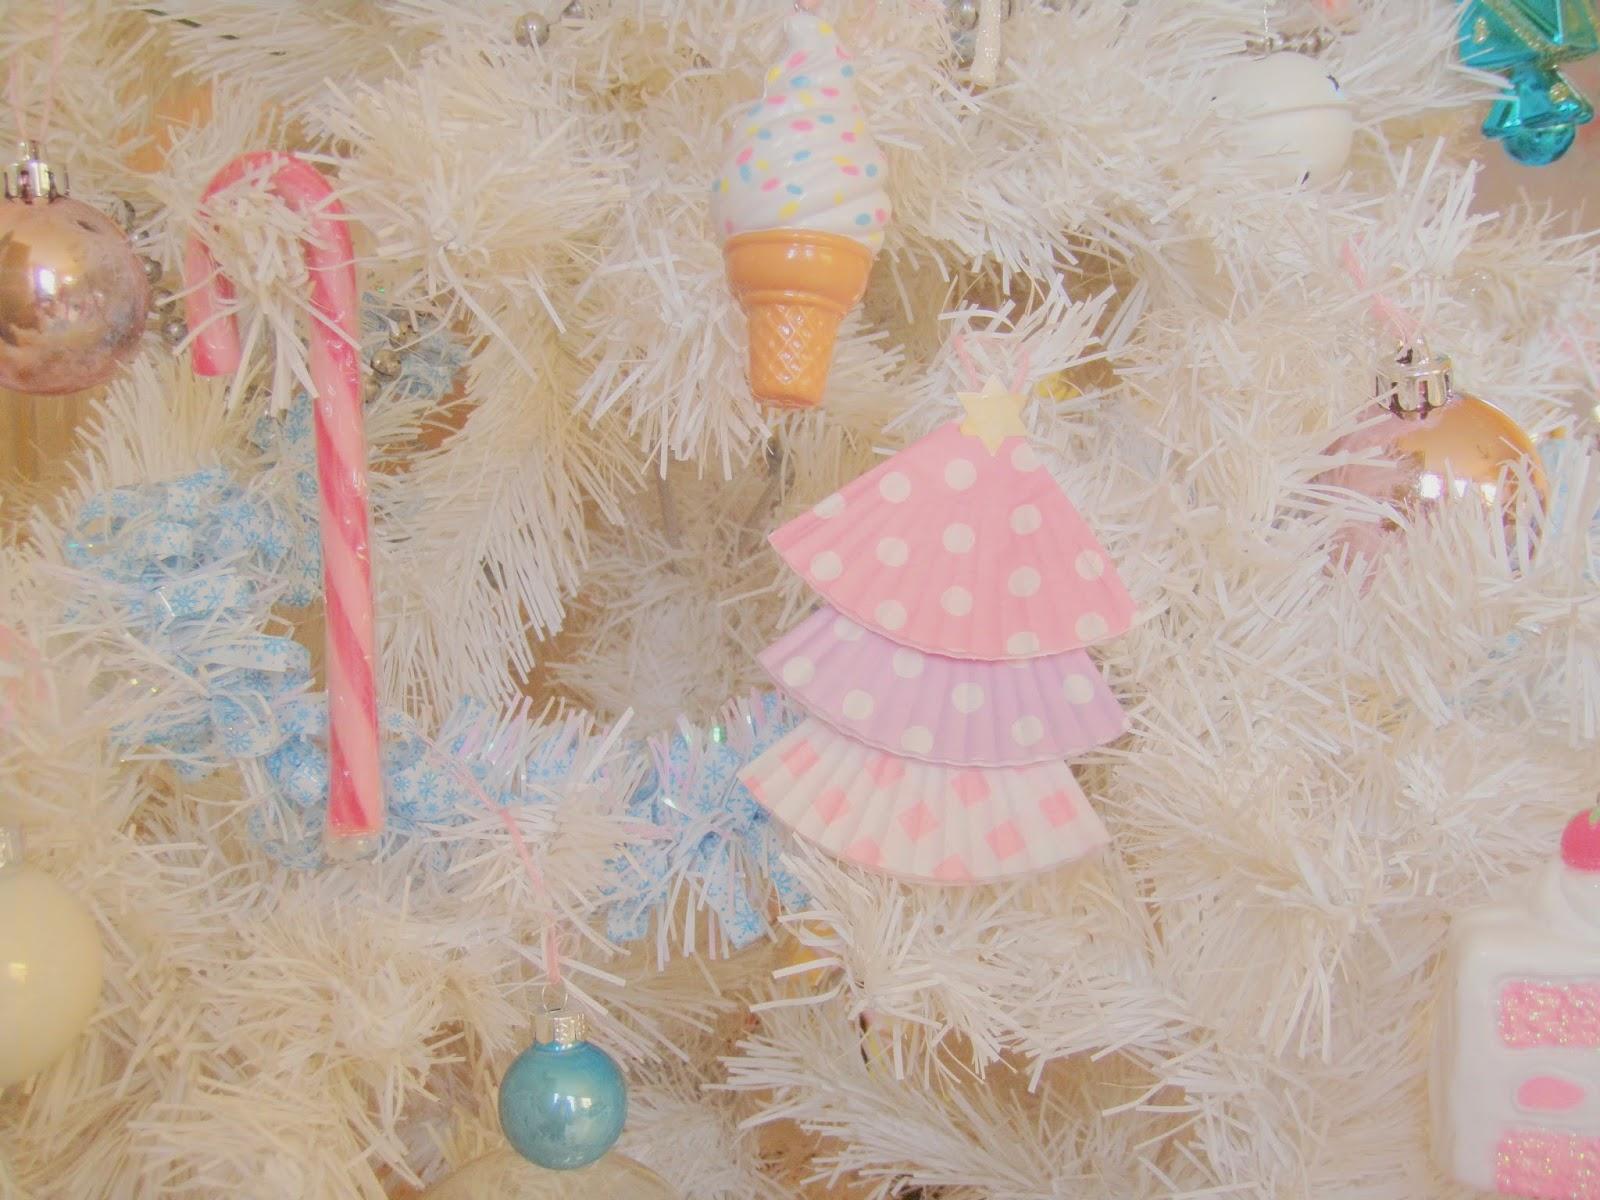 Noël pastel et sucré #1  Des petits sapins en caissettes de Cupcakes